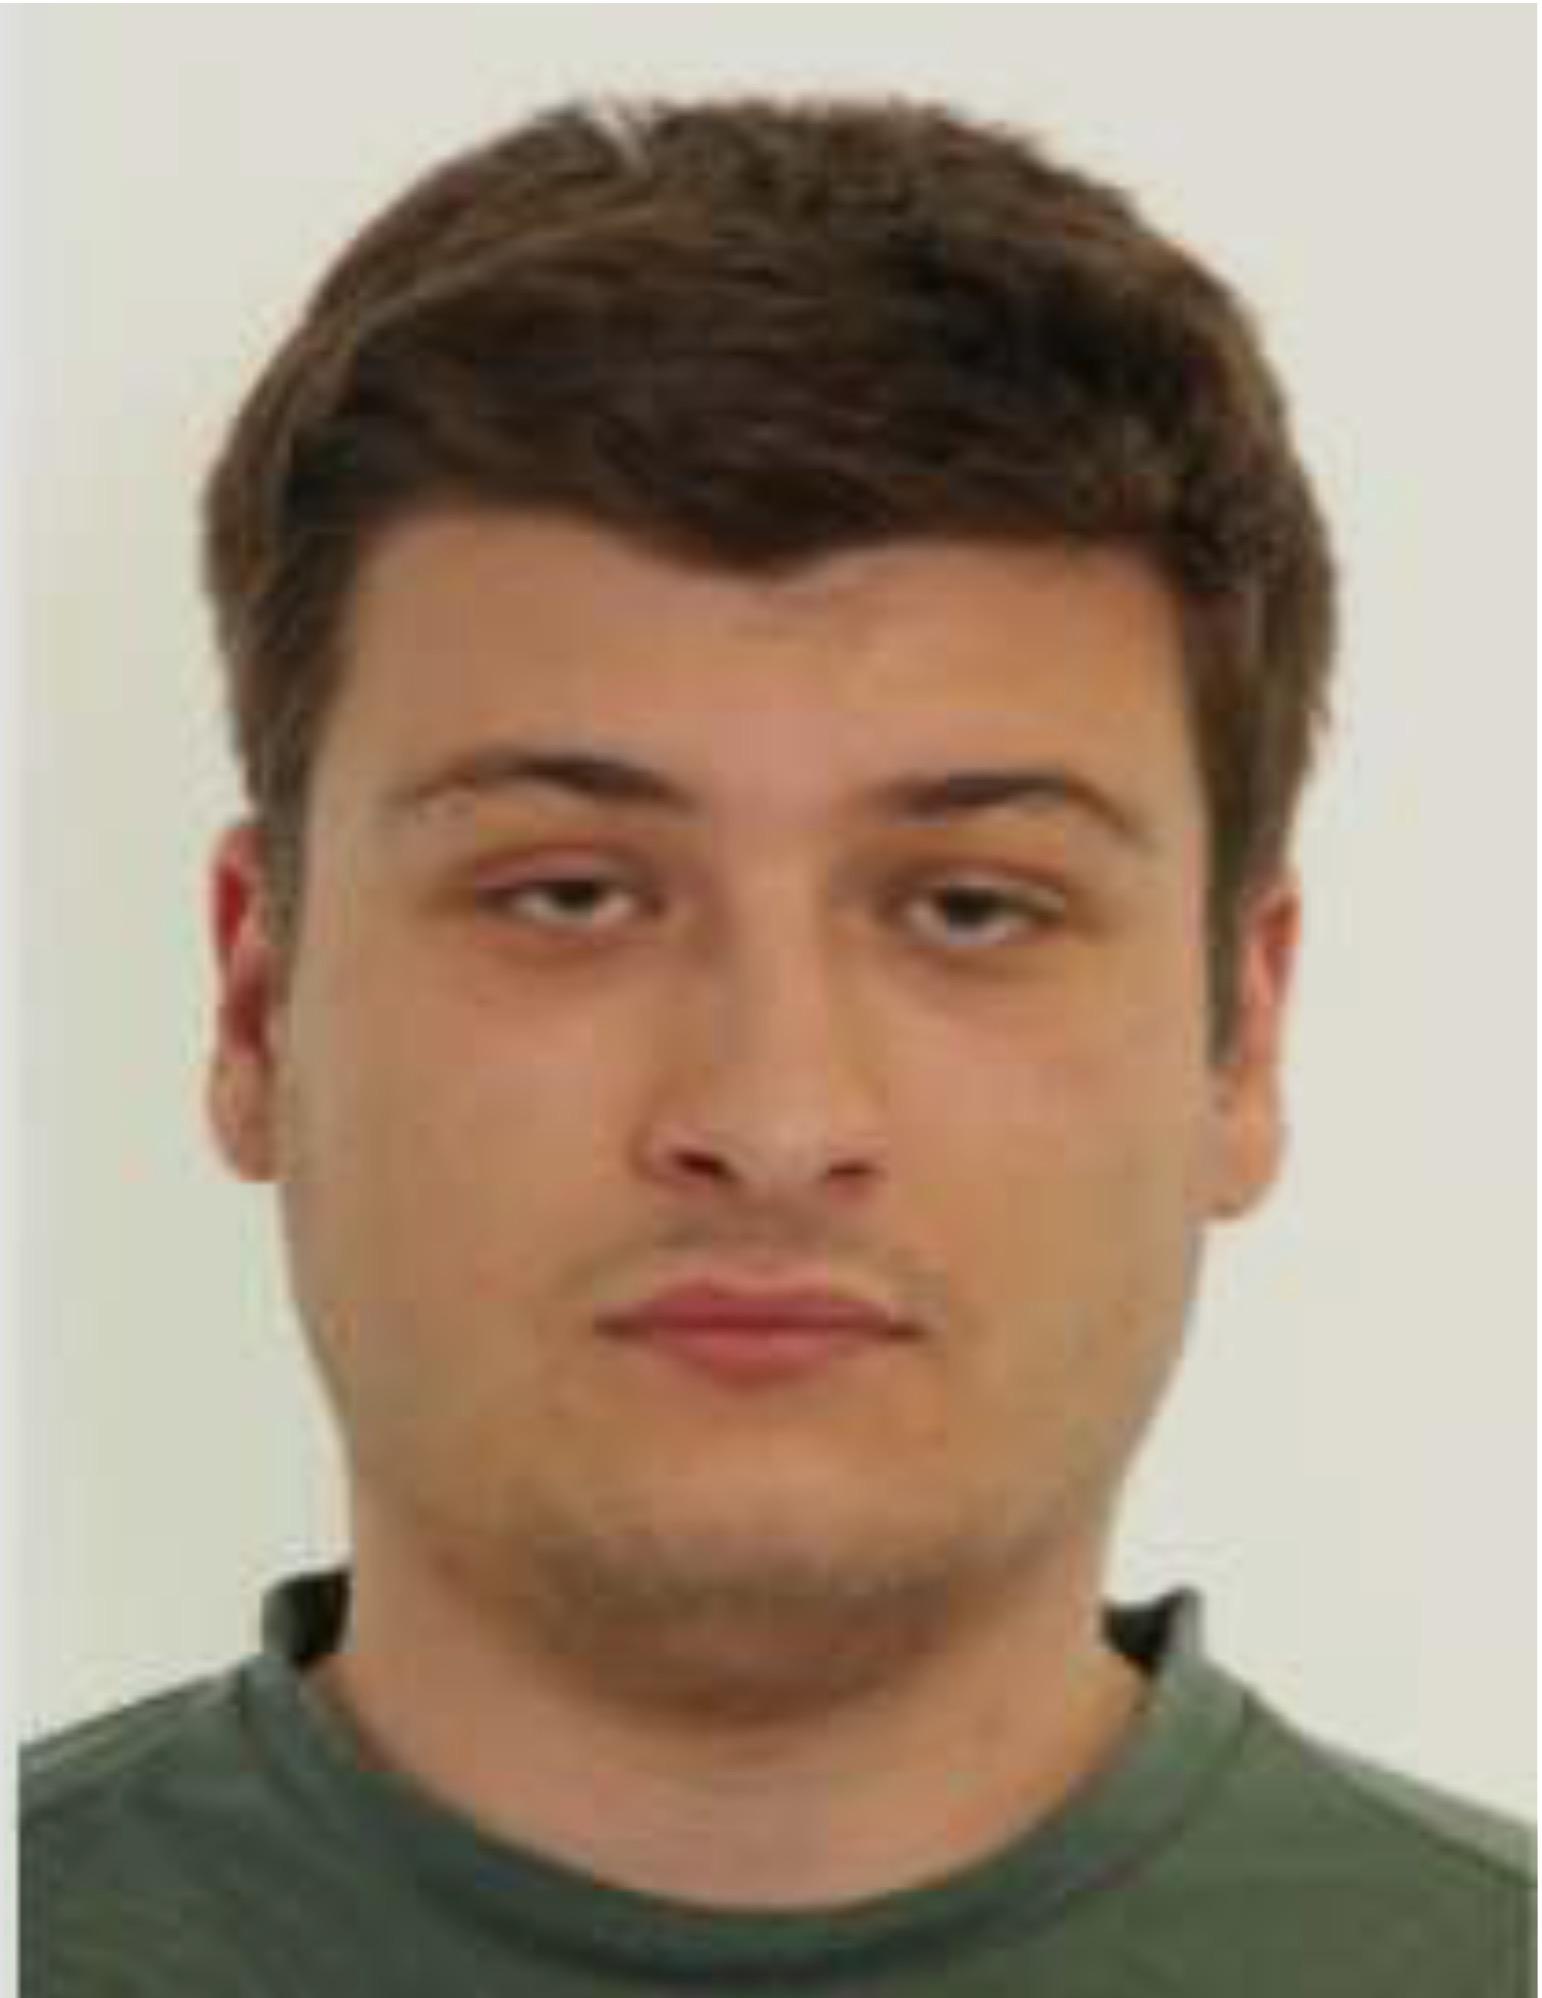 Rajan Rizvic, 28, döms till lagens strängaste straff, livstids fängelse.